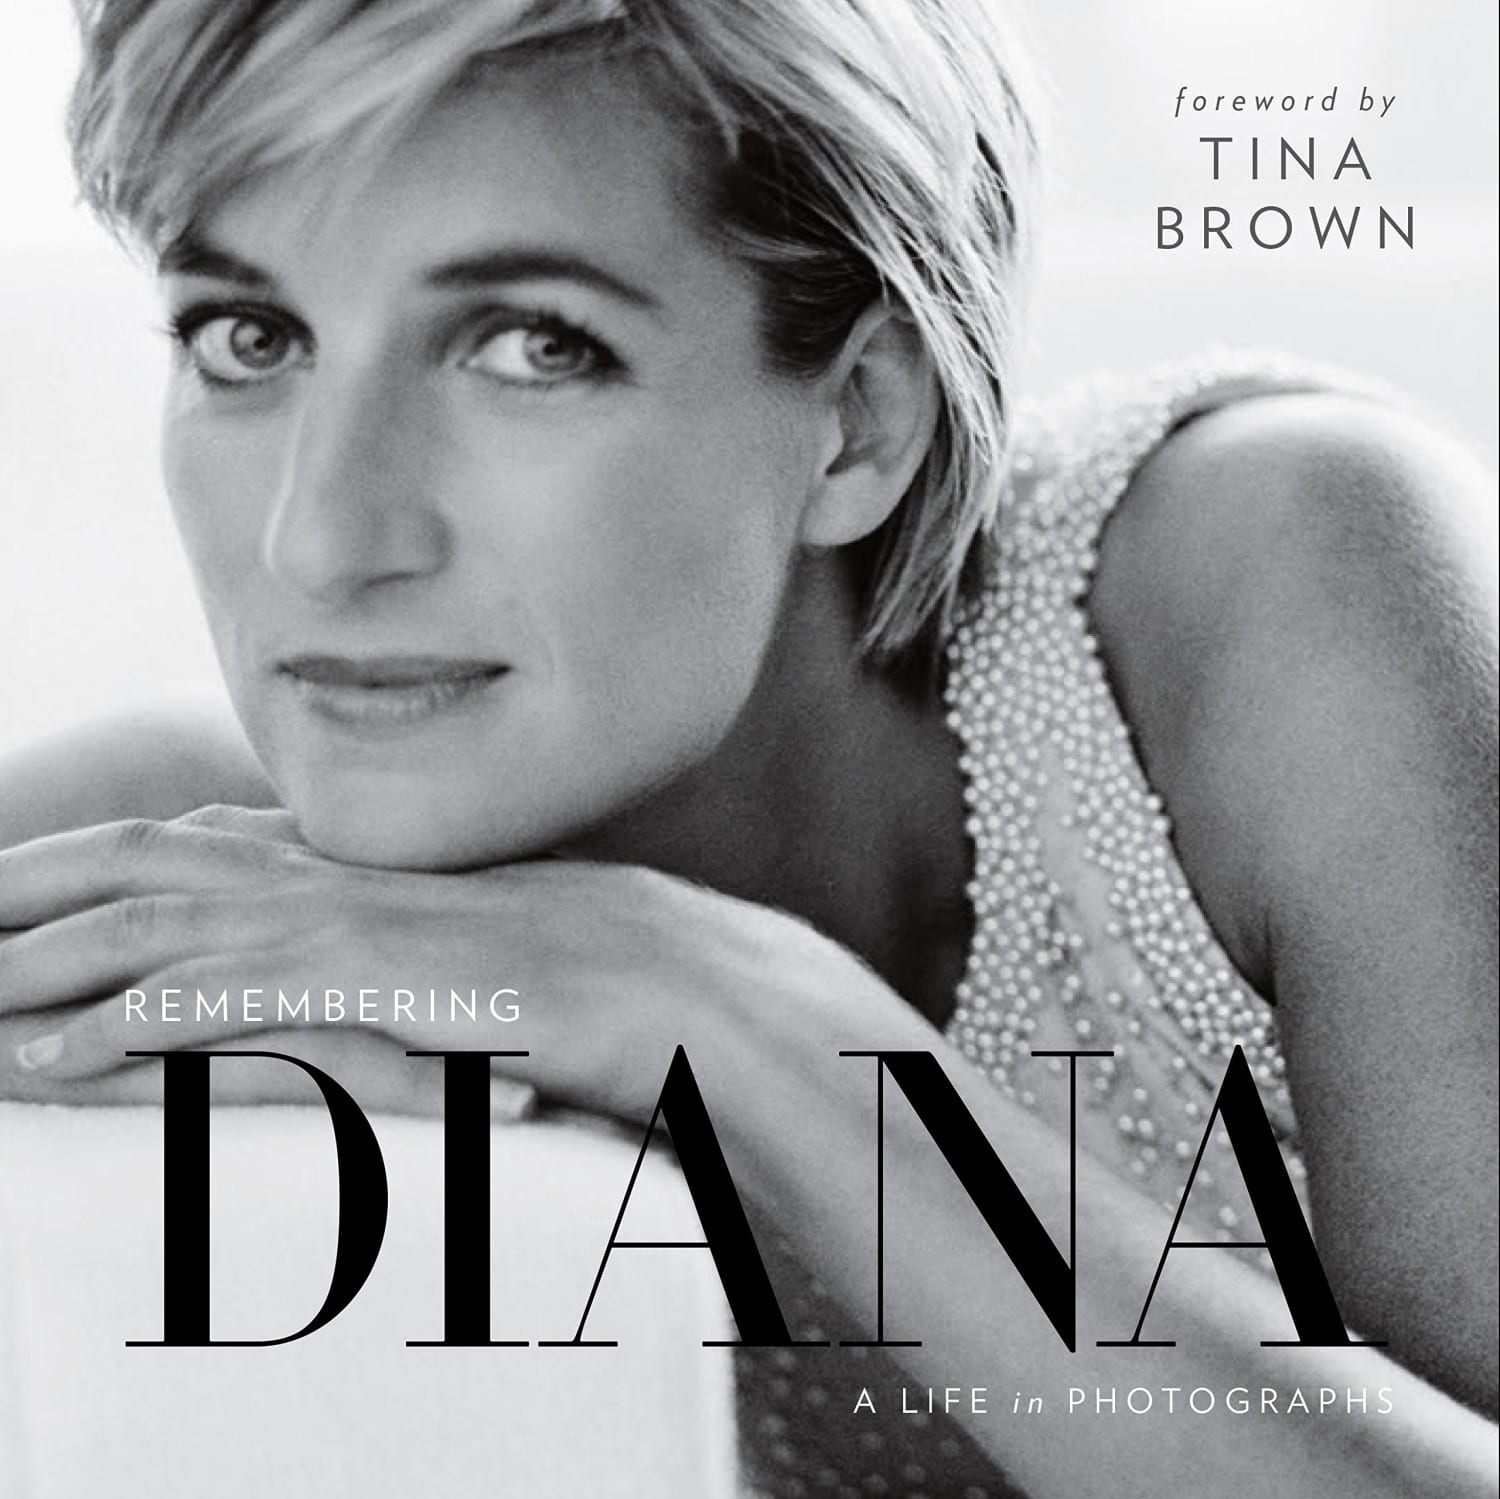 Princess Diana Photo Book 